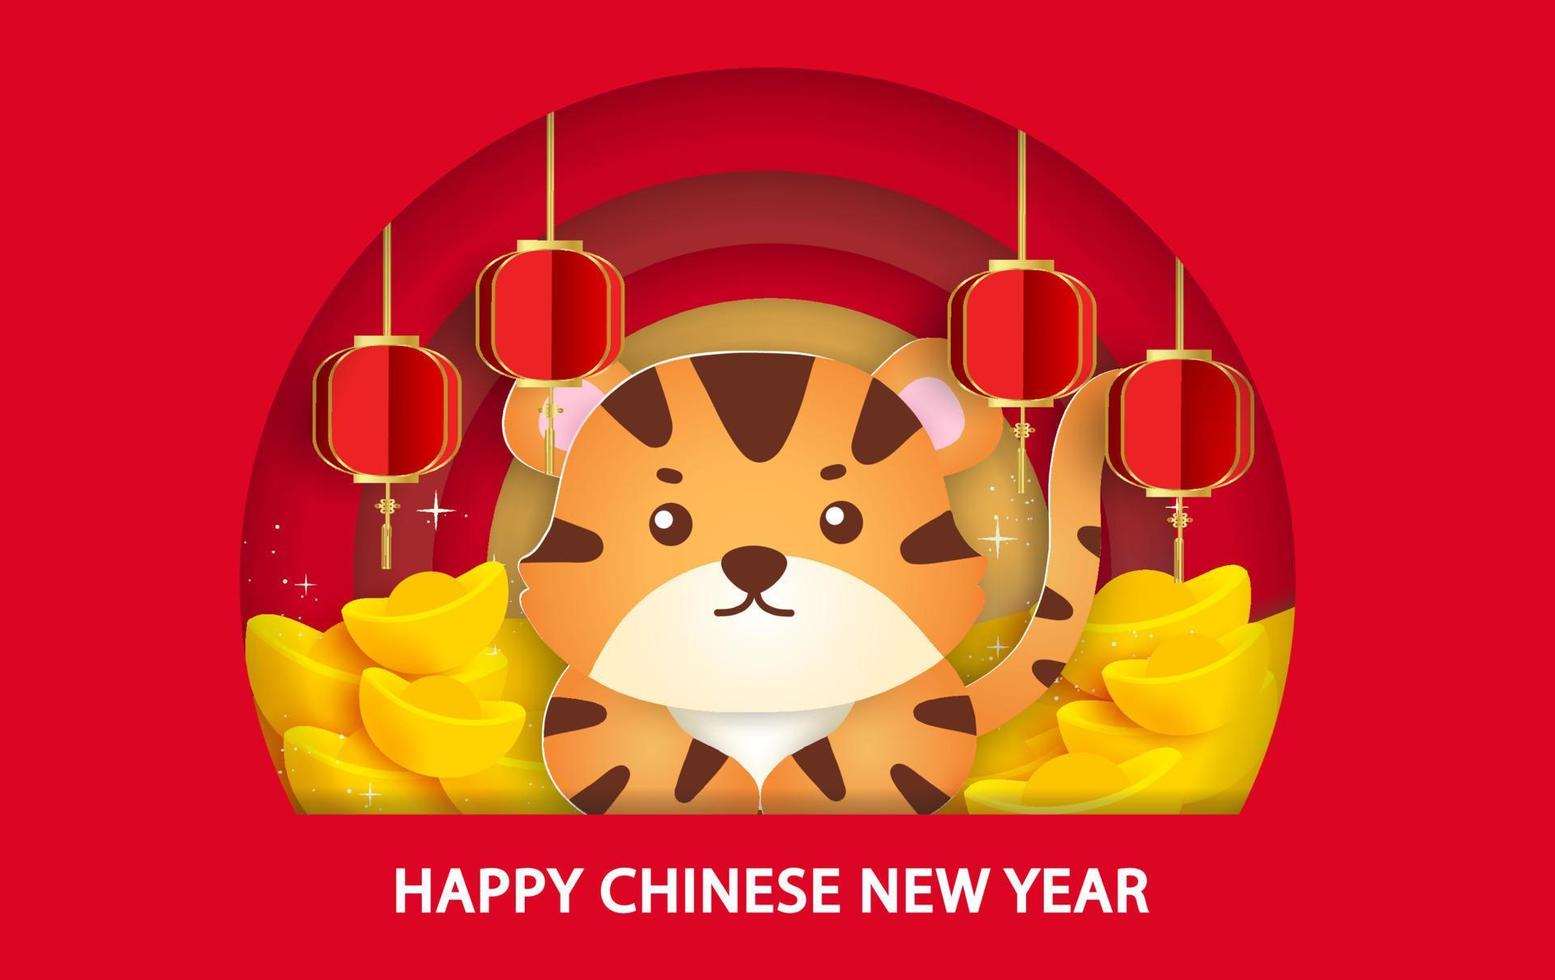 capodanno cinese 2022 anno della tigre biglietto di auguri in stile carta tagliata vettore